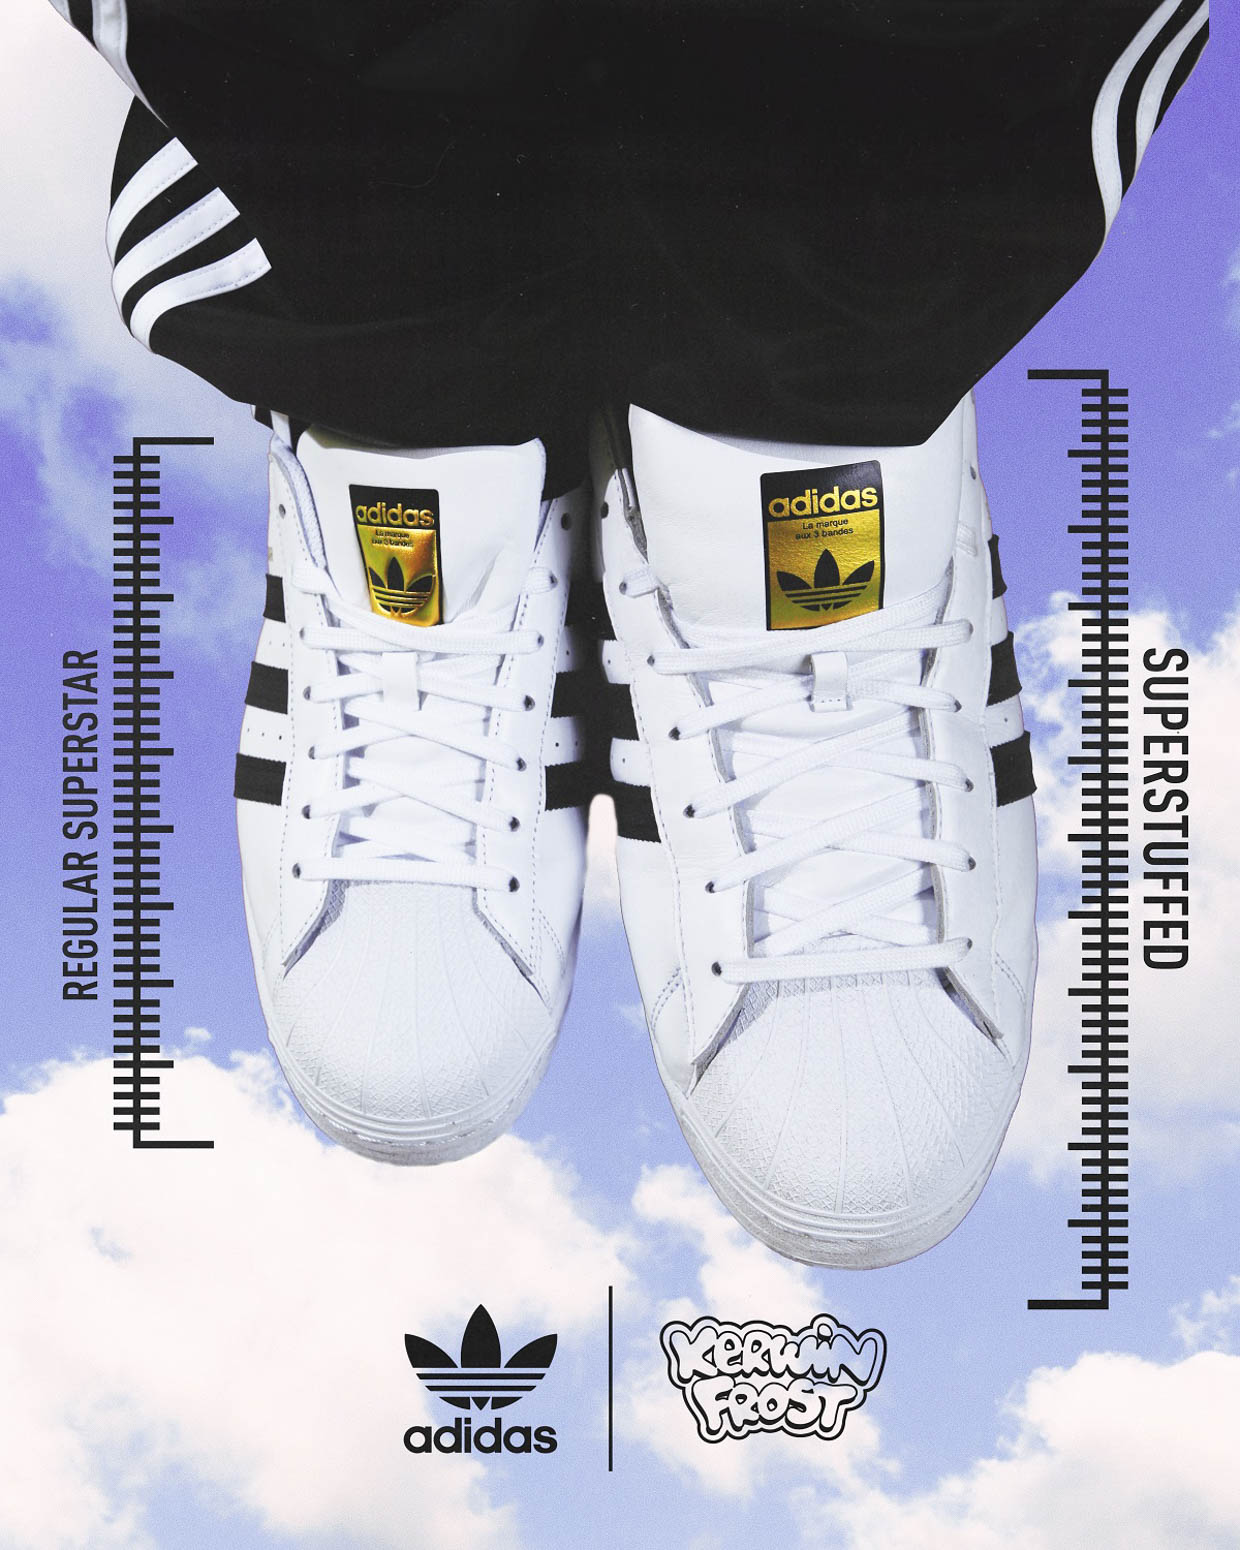 adidas Originals x Kerwin Frost Superstuffed Sneakers